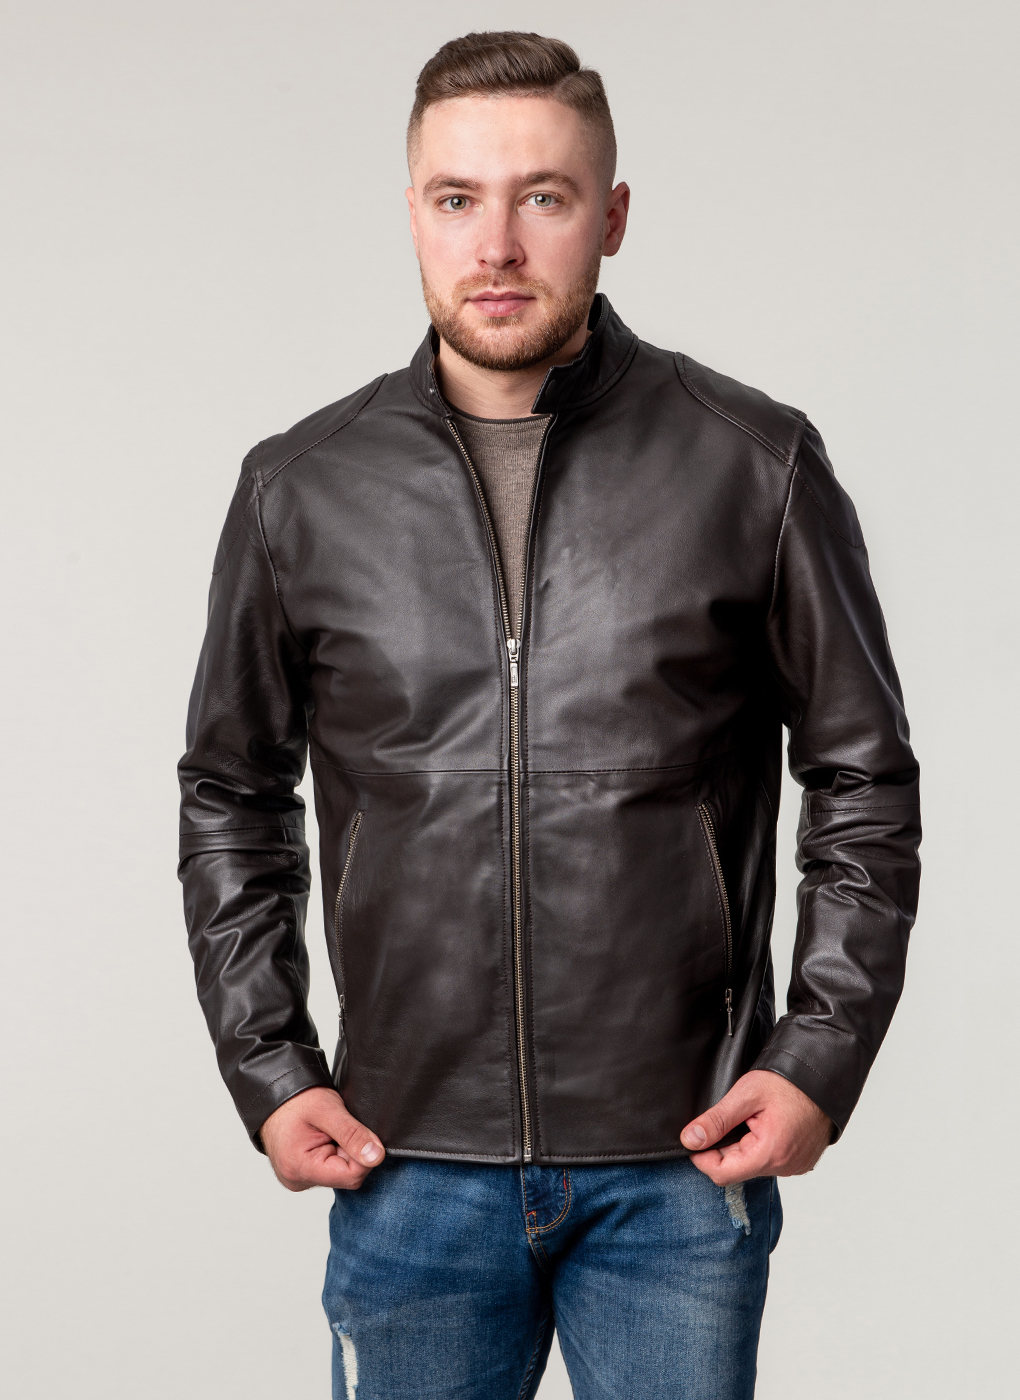 Кожаная куртка мужская Каляев 62652 коричневая 56 RU